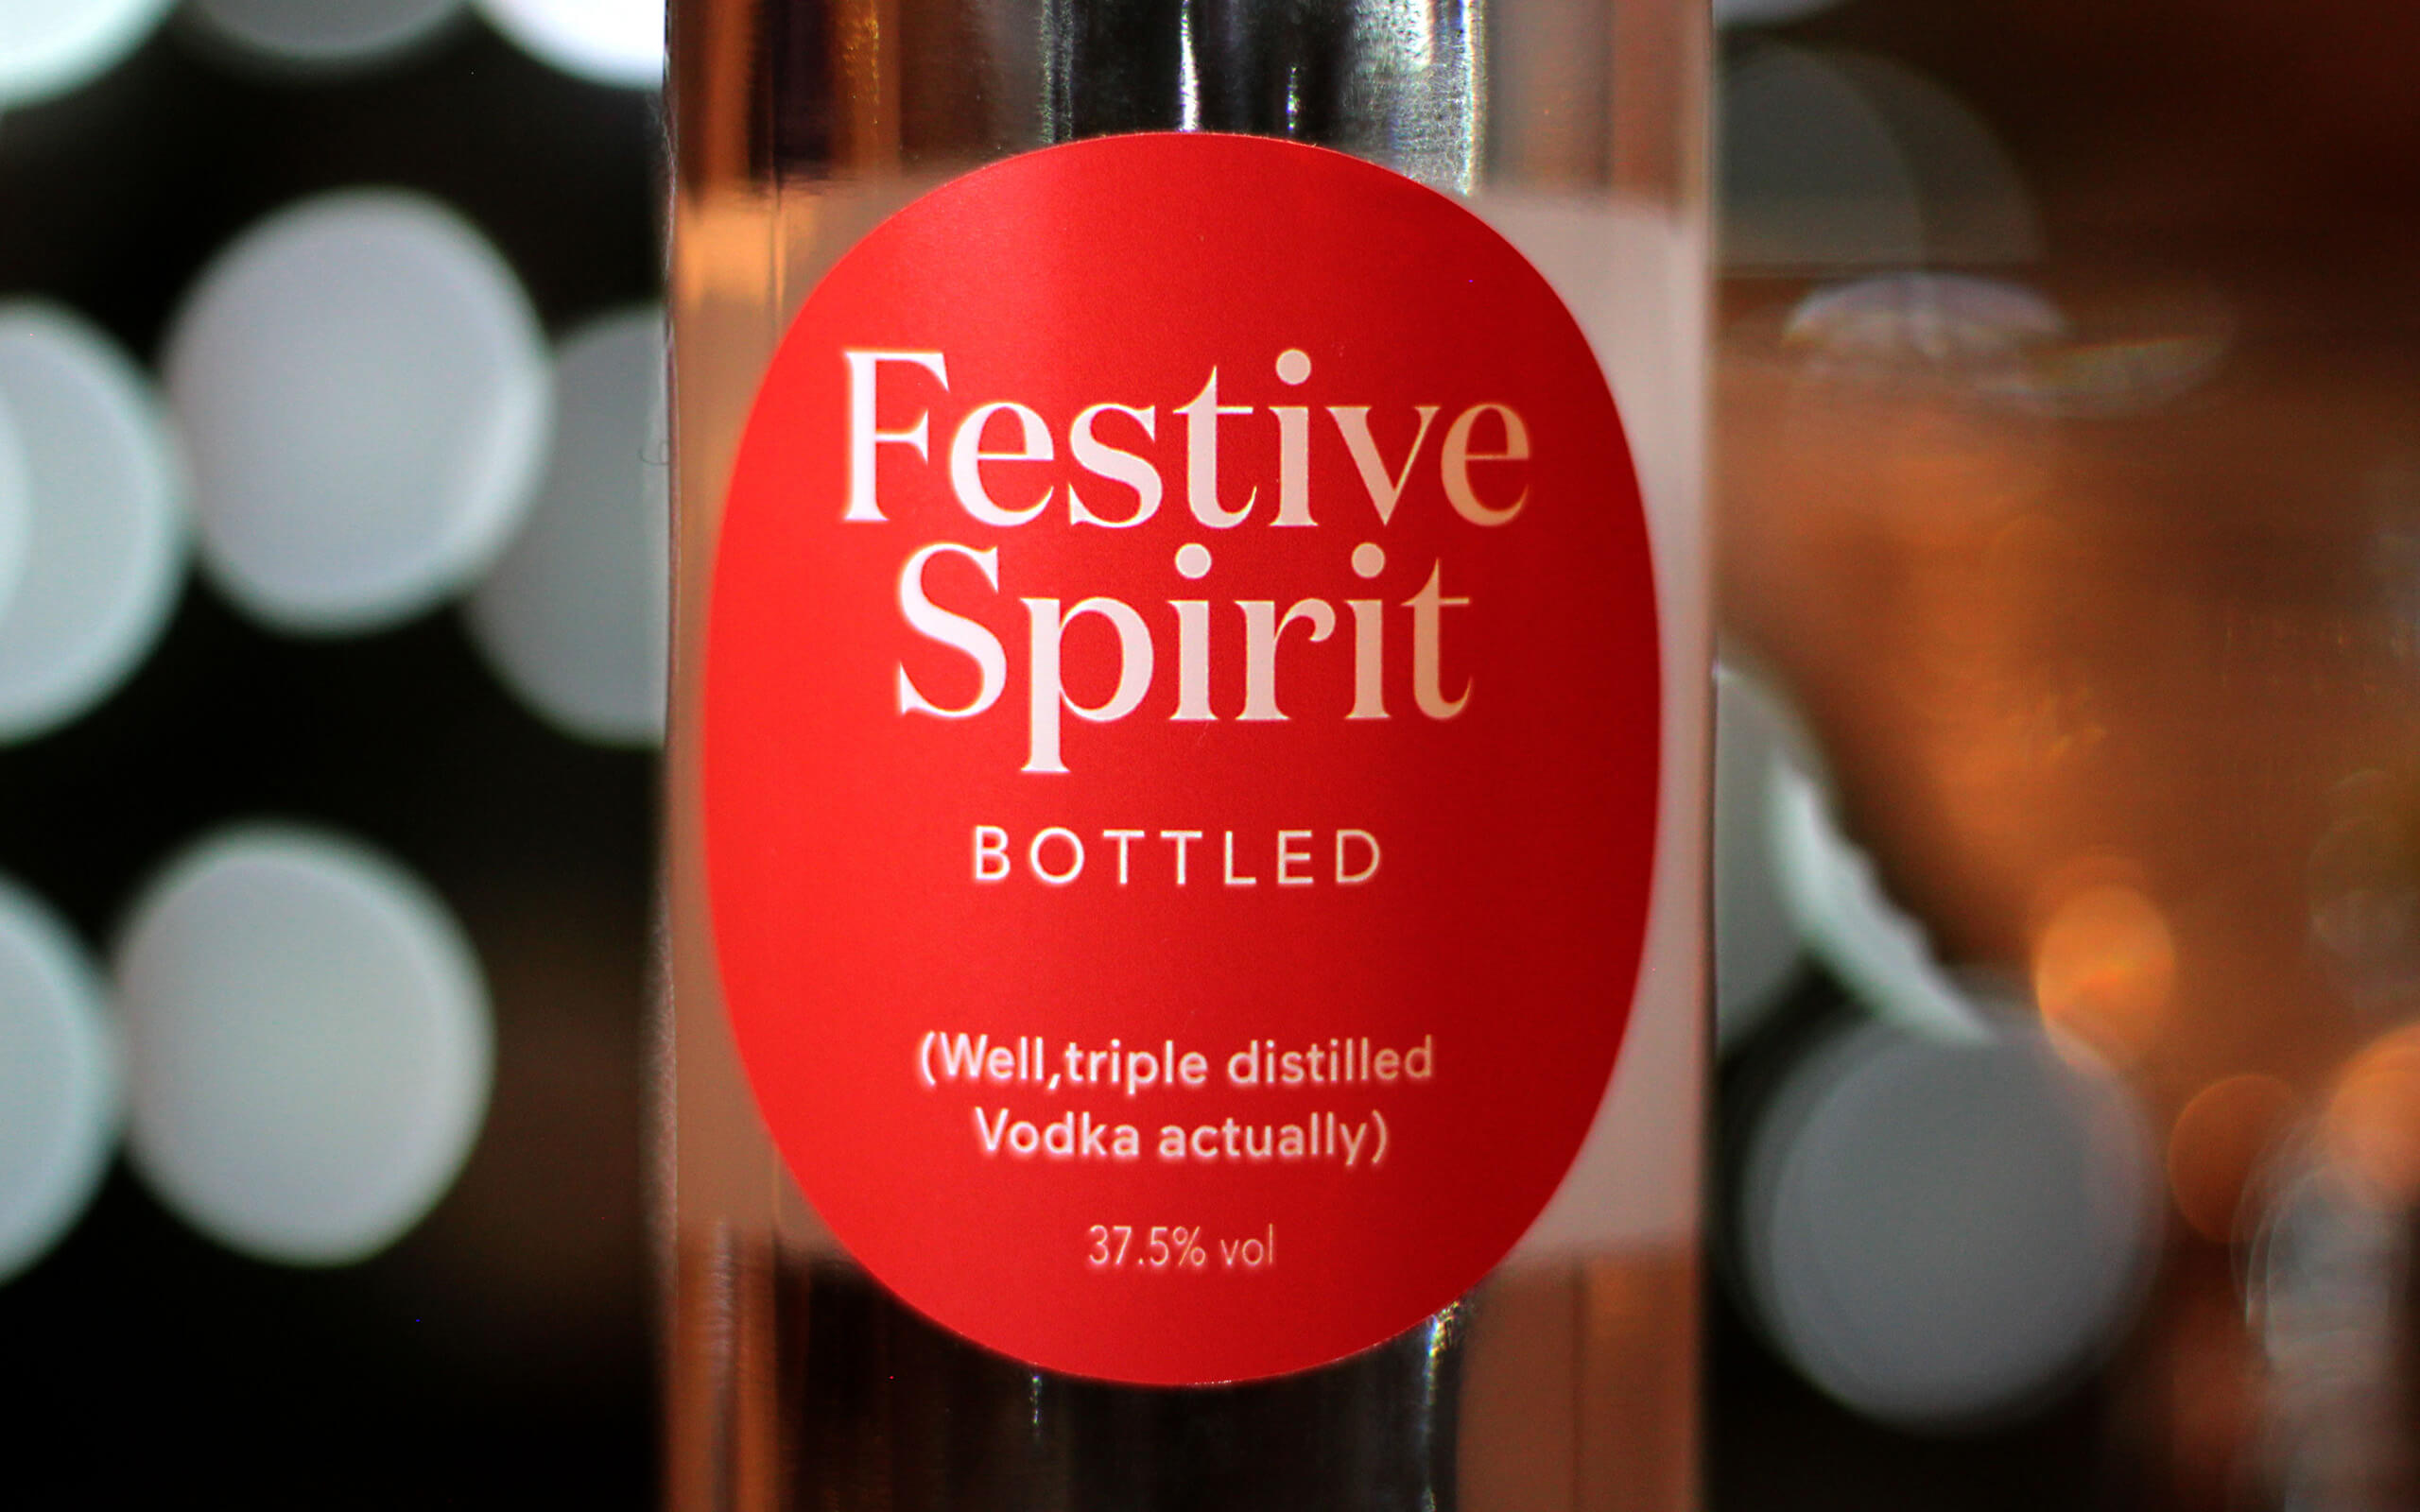 Festive Spirit bottled and Gifted by Taller Design